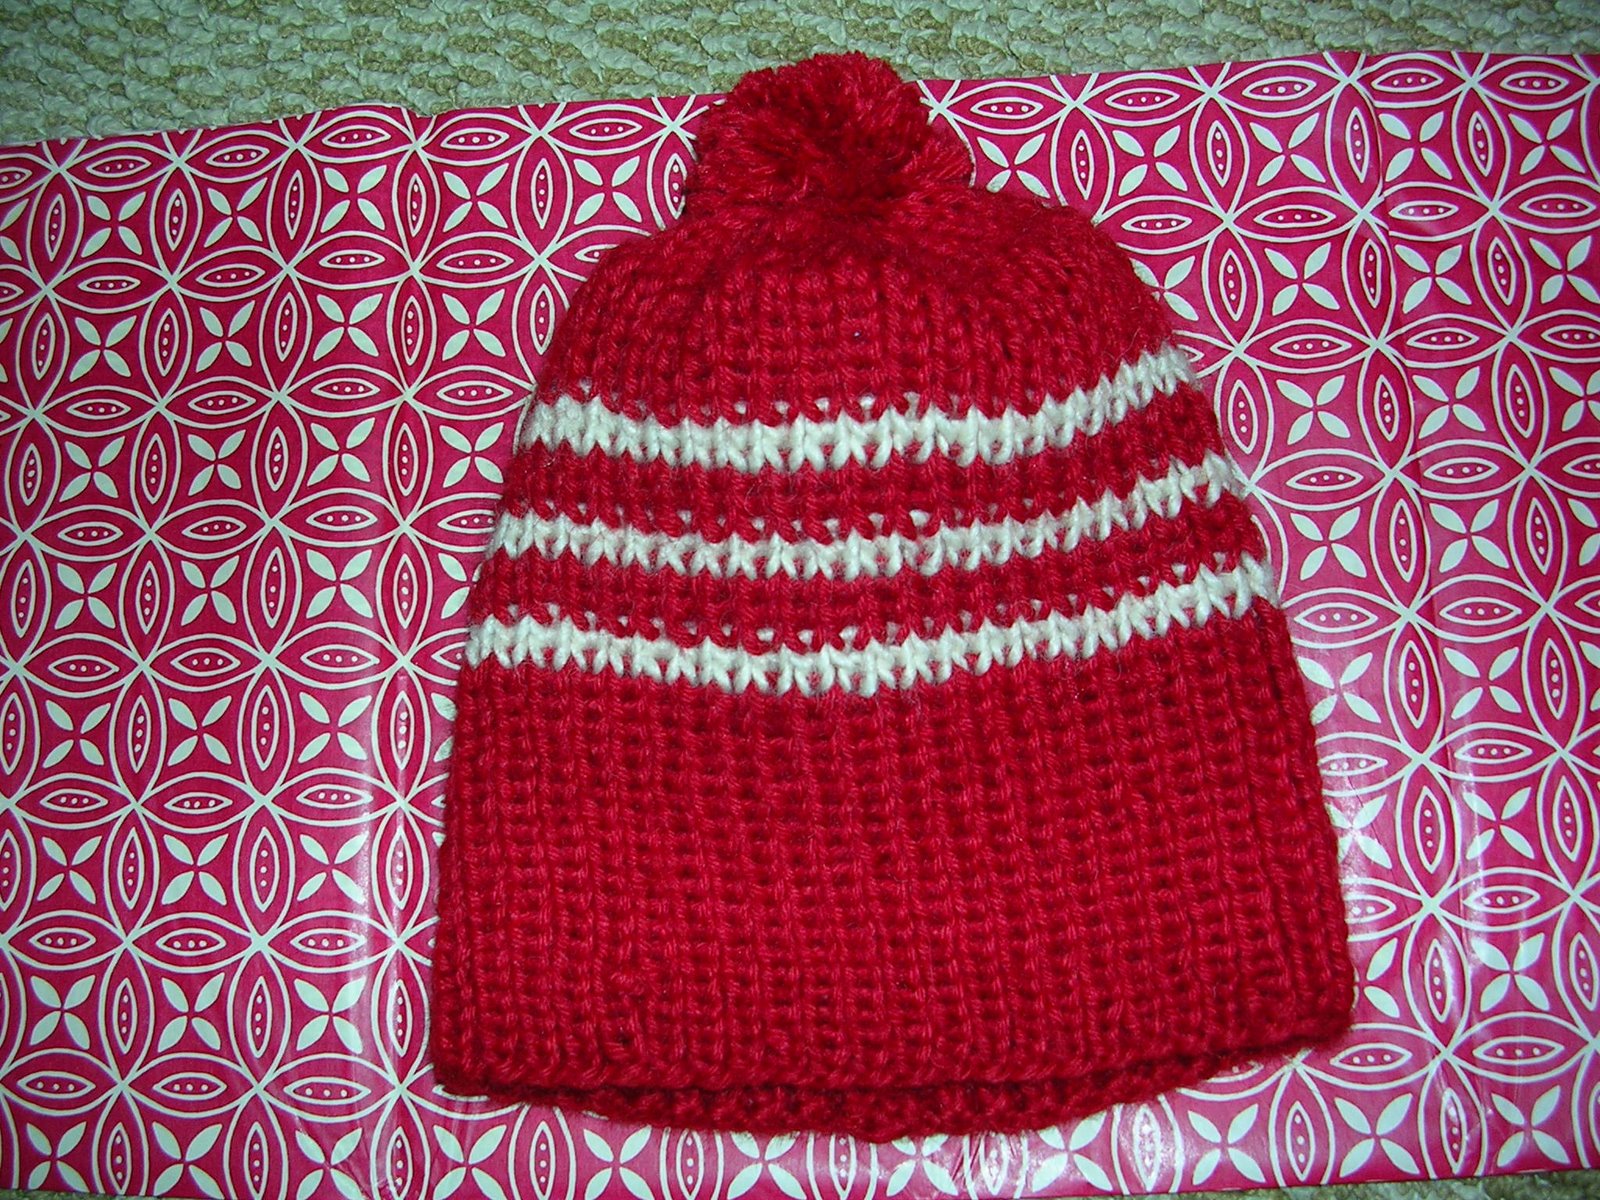 [emily's+red+hat+002.jpg]